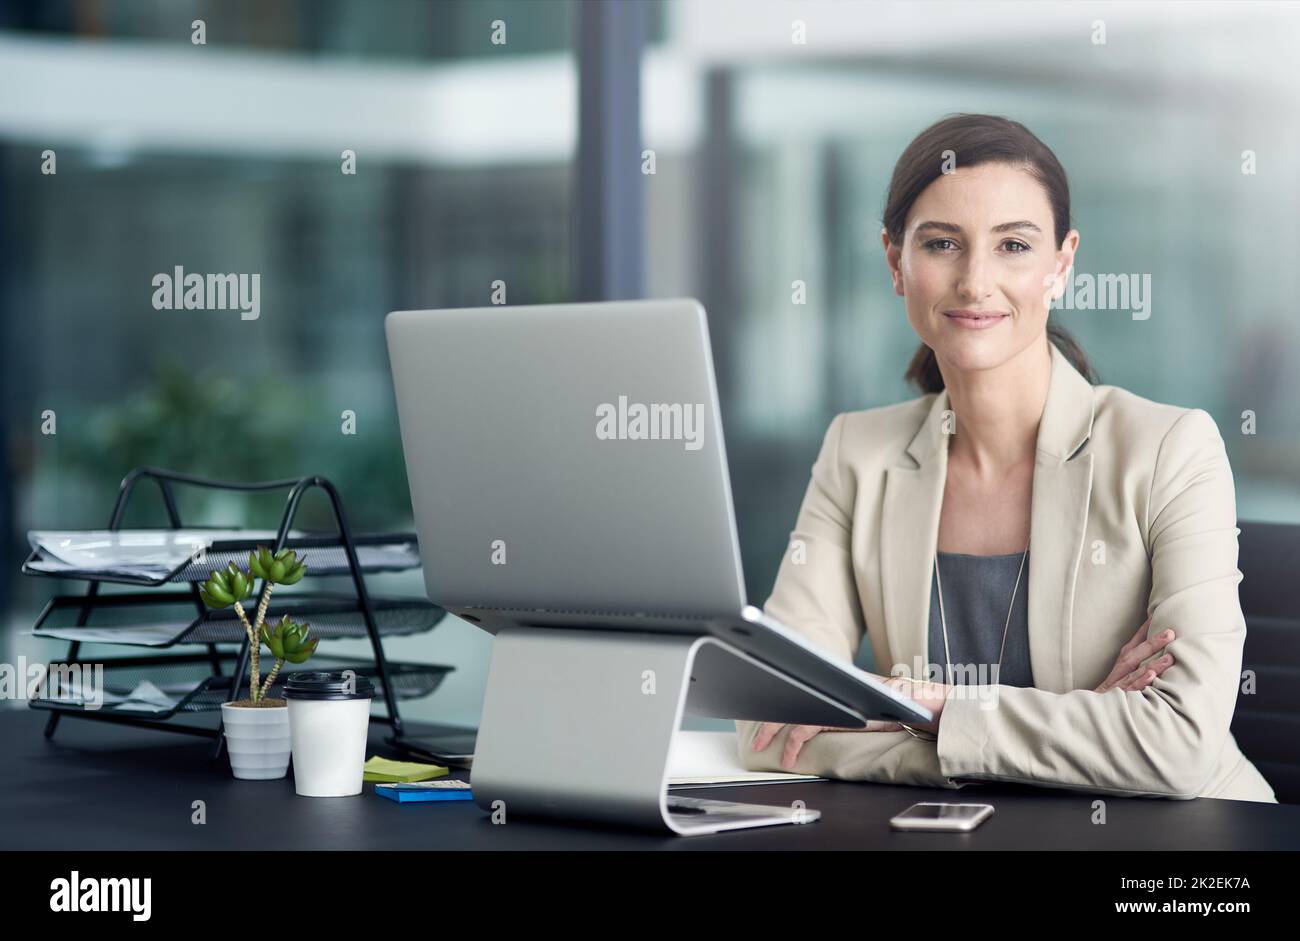 Zufriedenheit am Arbeitsplatz zahlt sich aus. Porträt einer professionellen Geschäftsfrau, die einen Laptop an ihrem Schreibtisch benutzt. Stockfoto